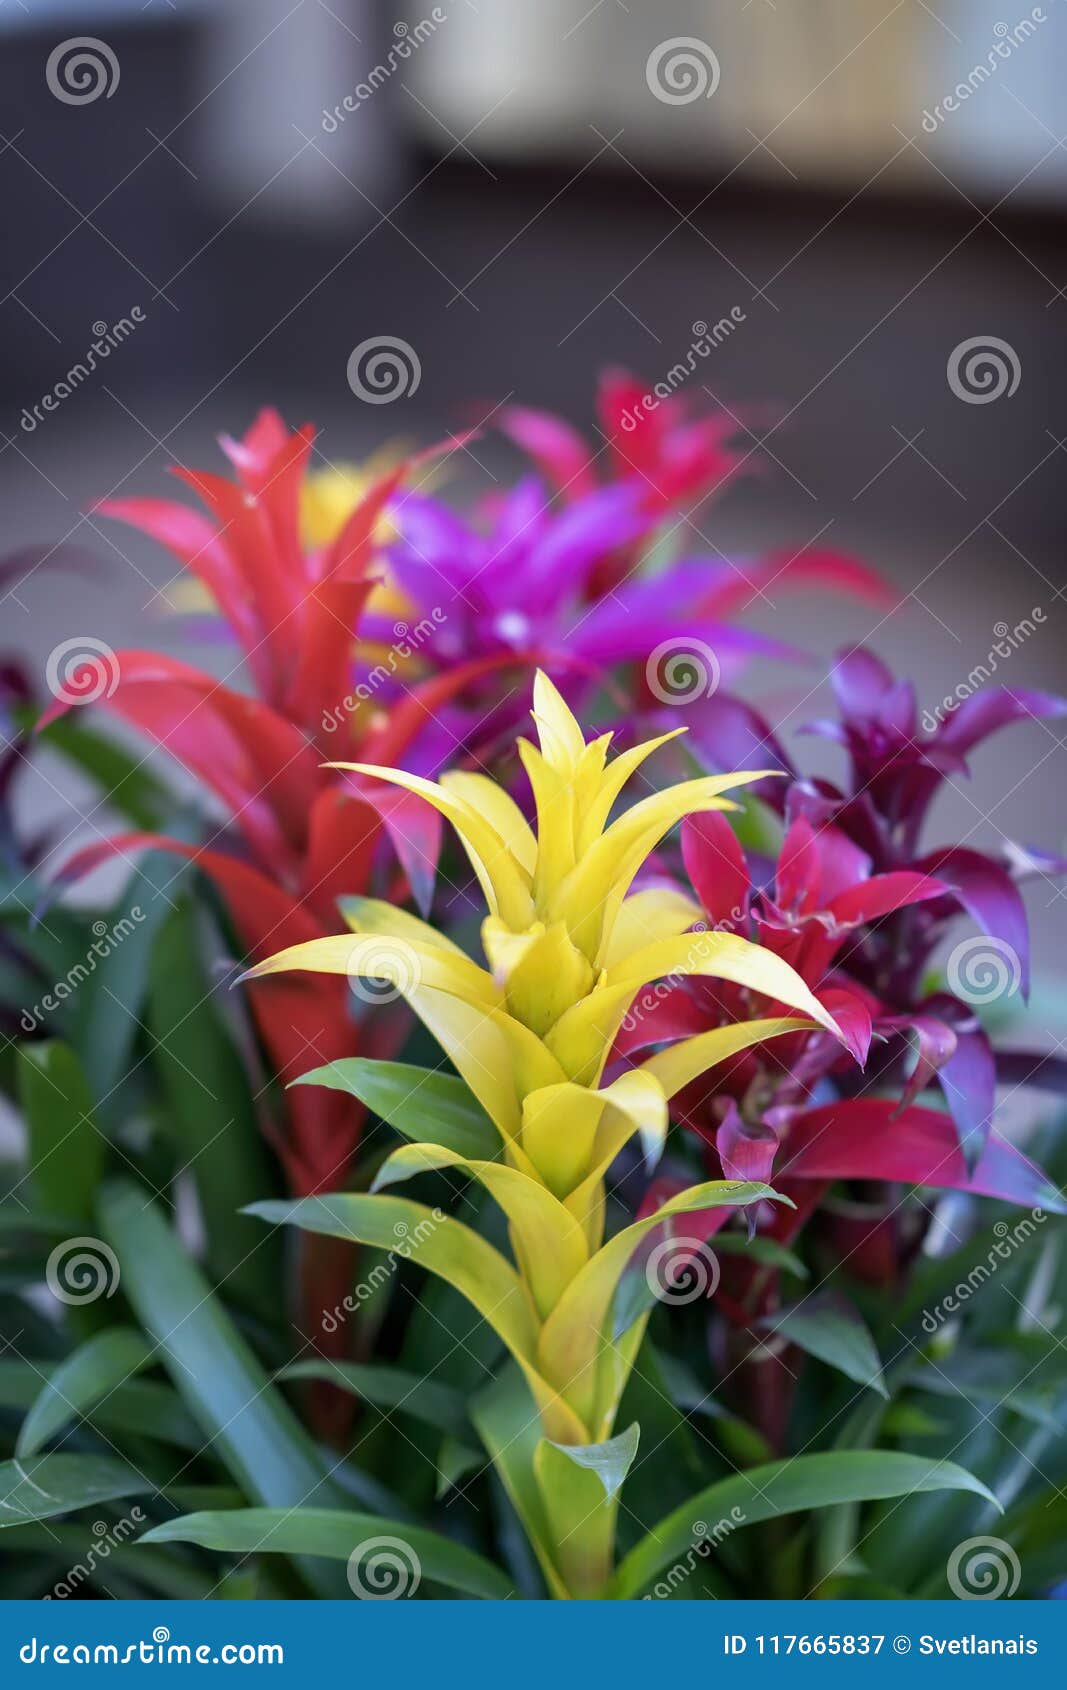 mix of colorful bright guzmania, fine representative of bromeliad or pineapple family. guzmania,  of male power